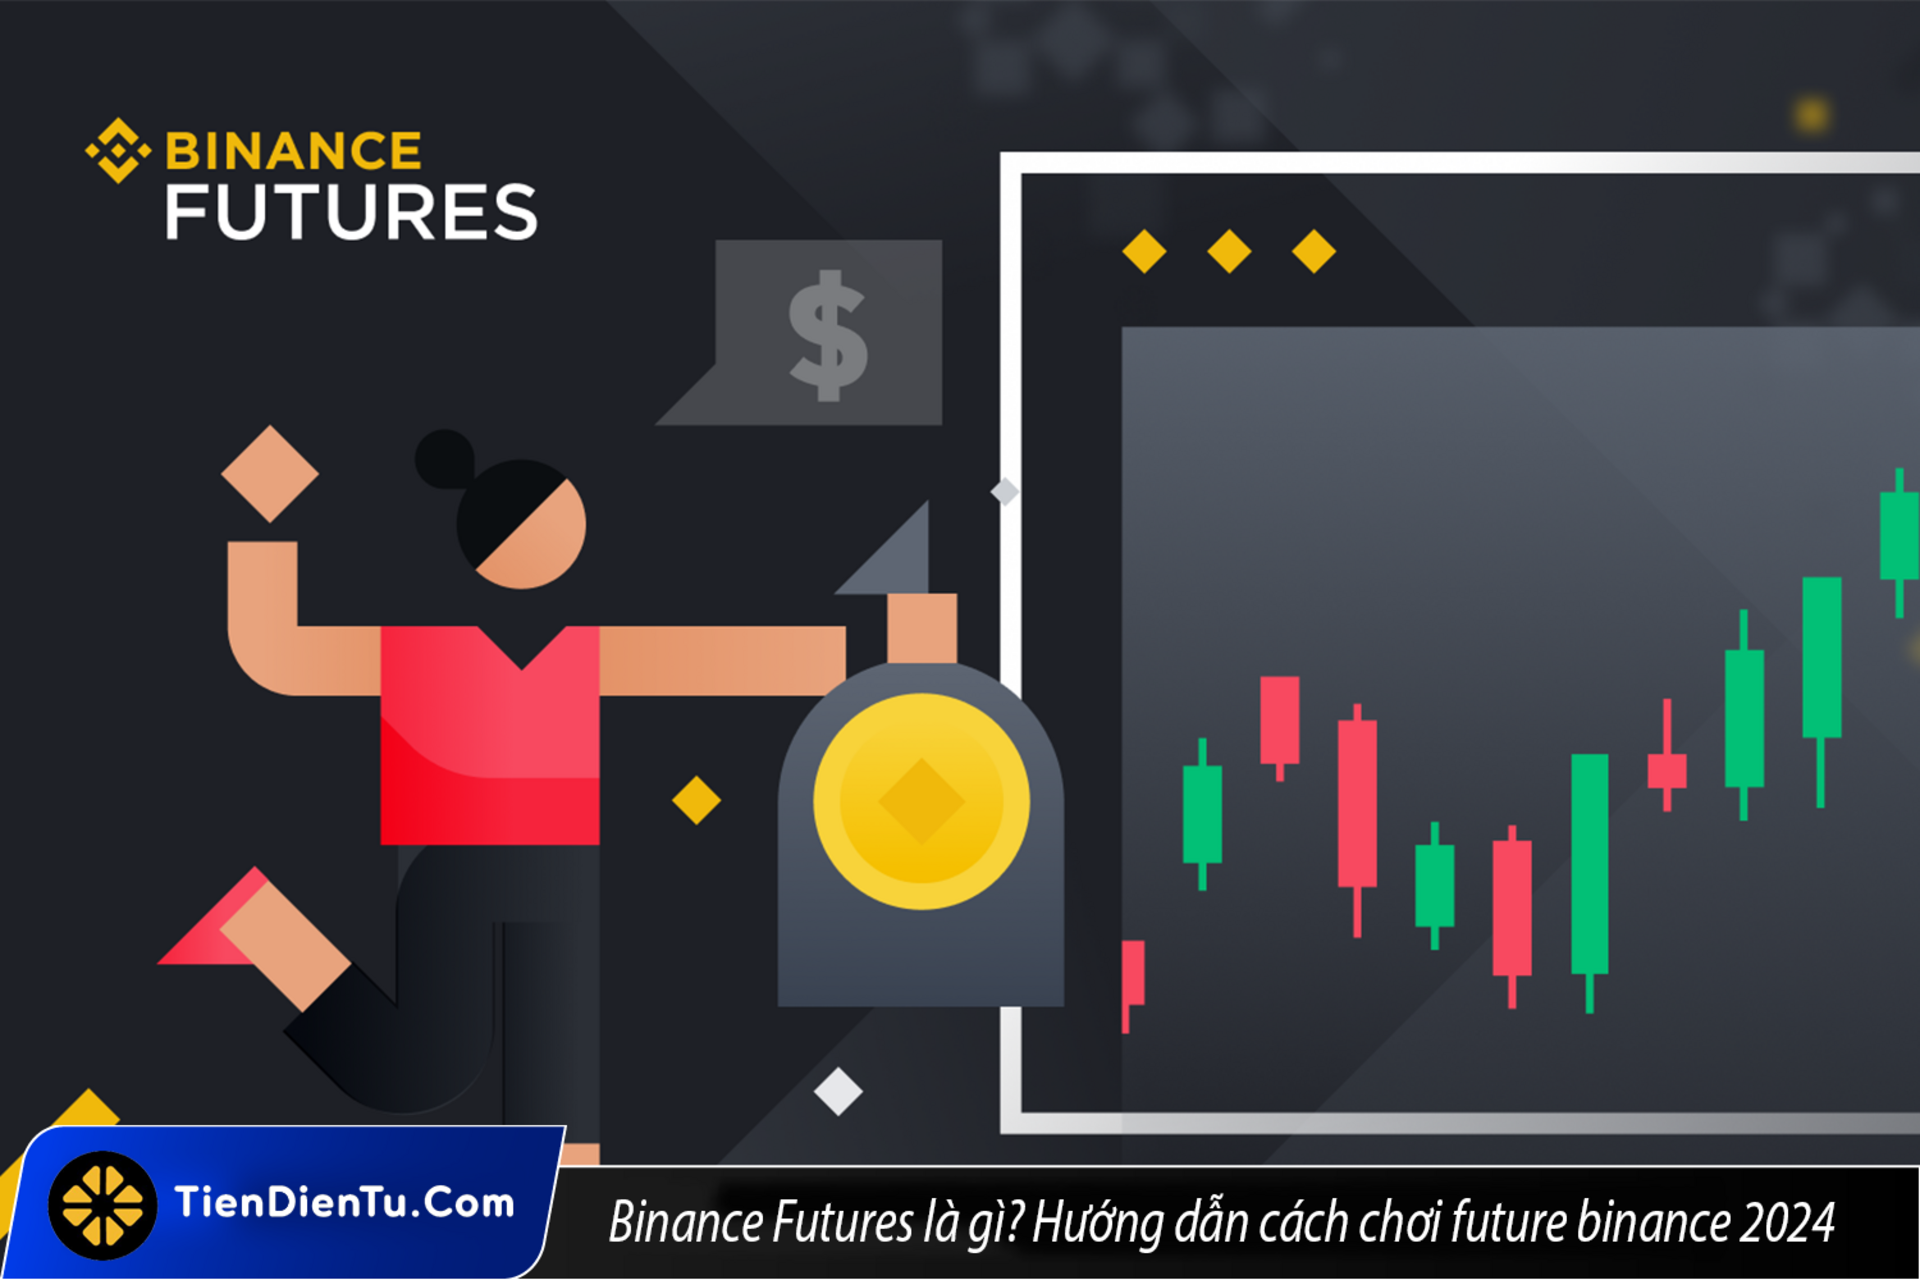 Binance Futures là gì? Hướng dẫn cách chơi Future Binance đầy đủ nhất